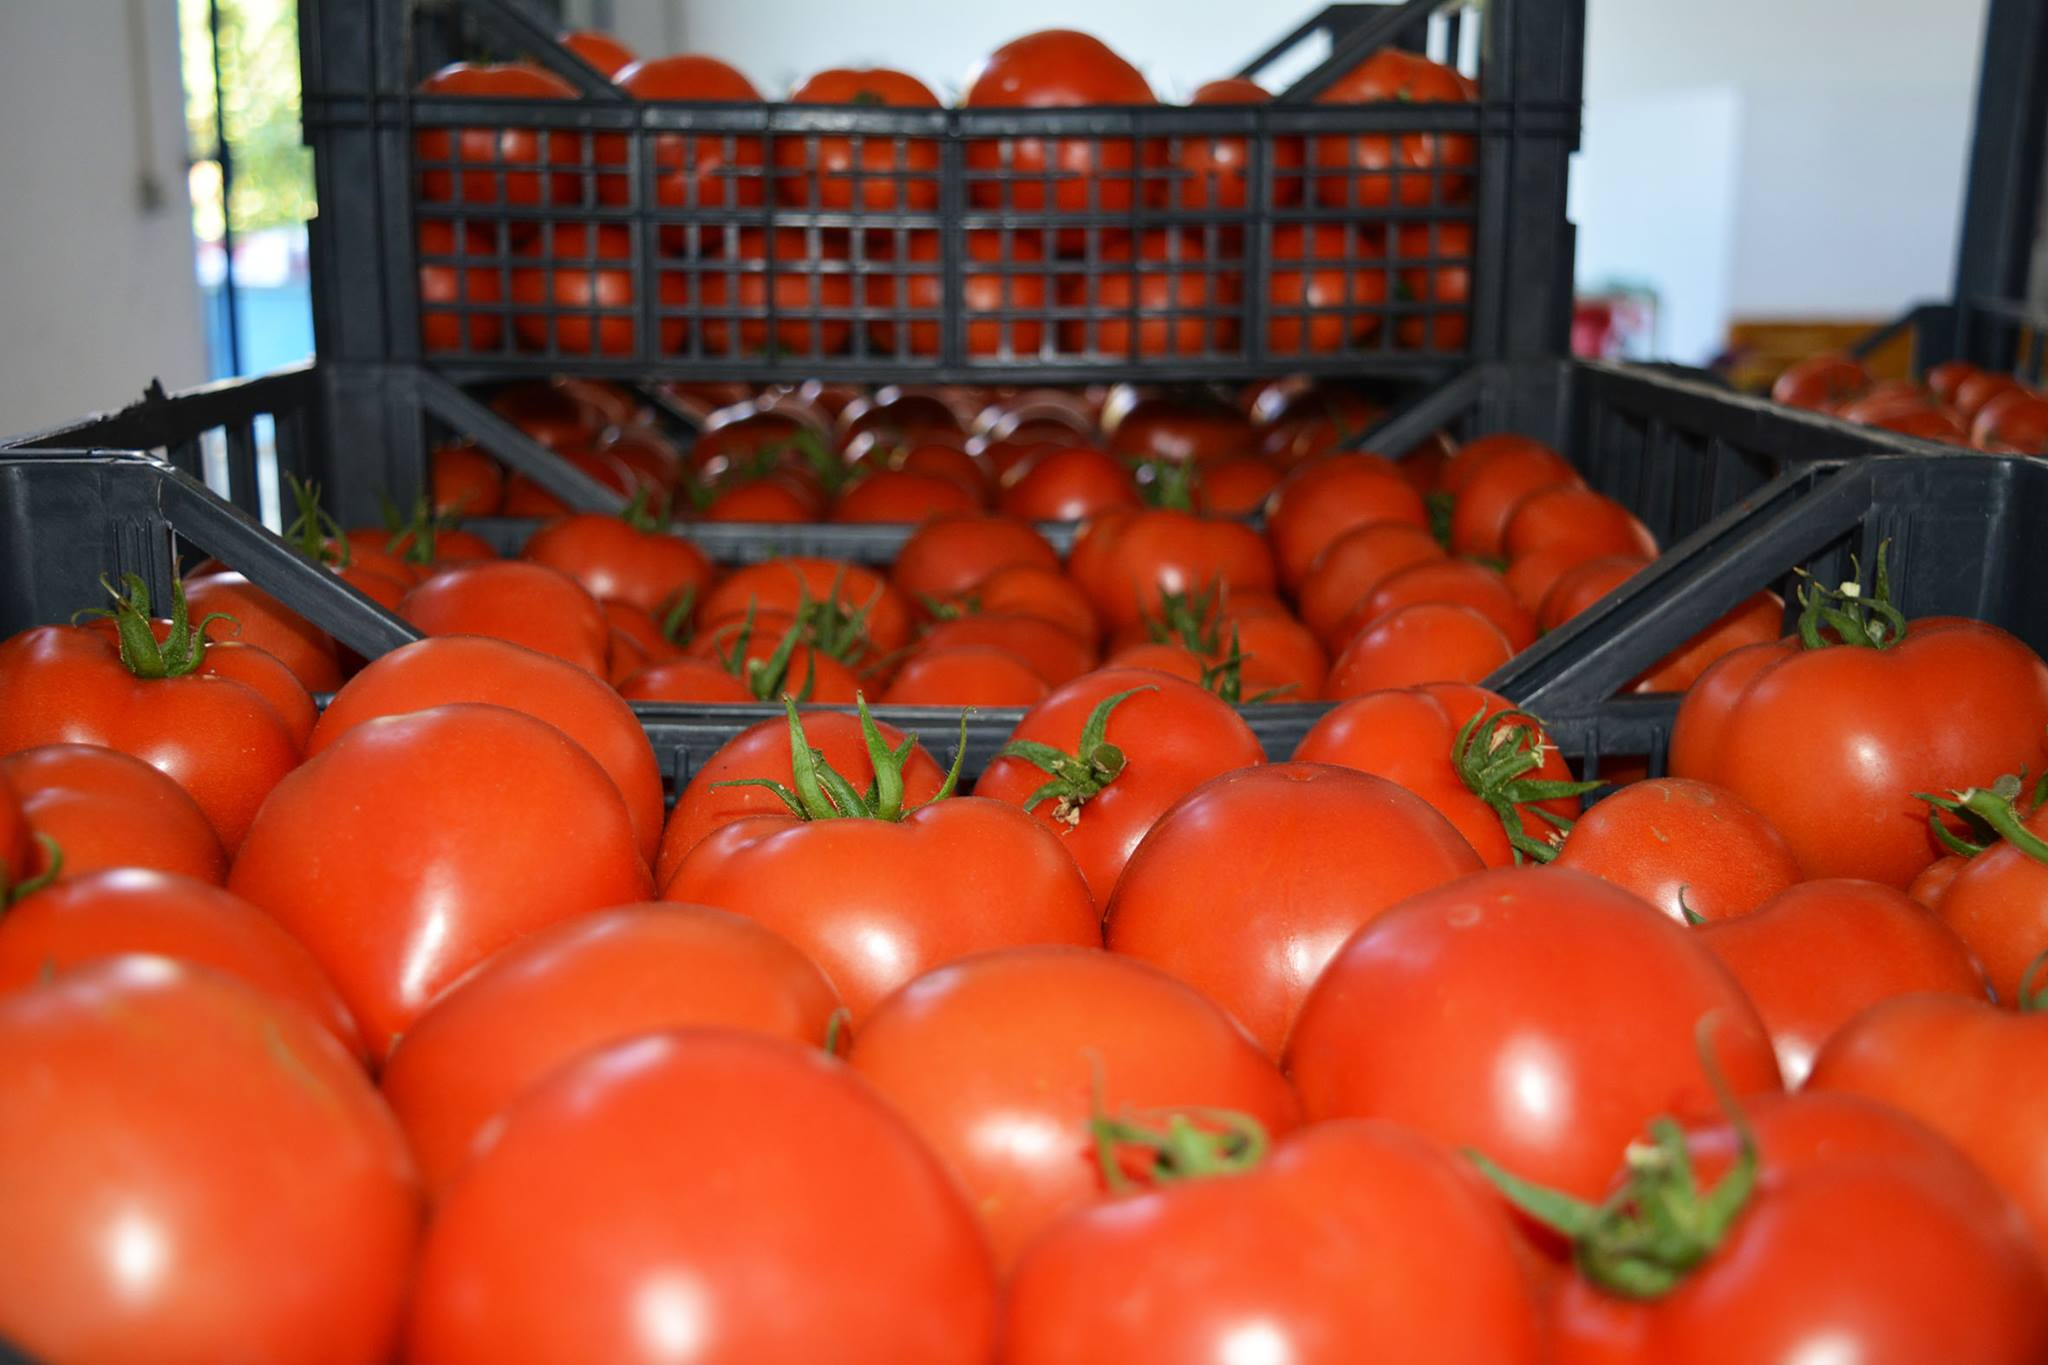 Rusiya Azərbaycana tətbiq etdiyi pomidor qadağasını qismən aradan qaldırdı